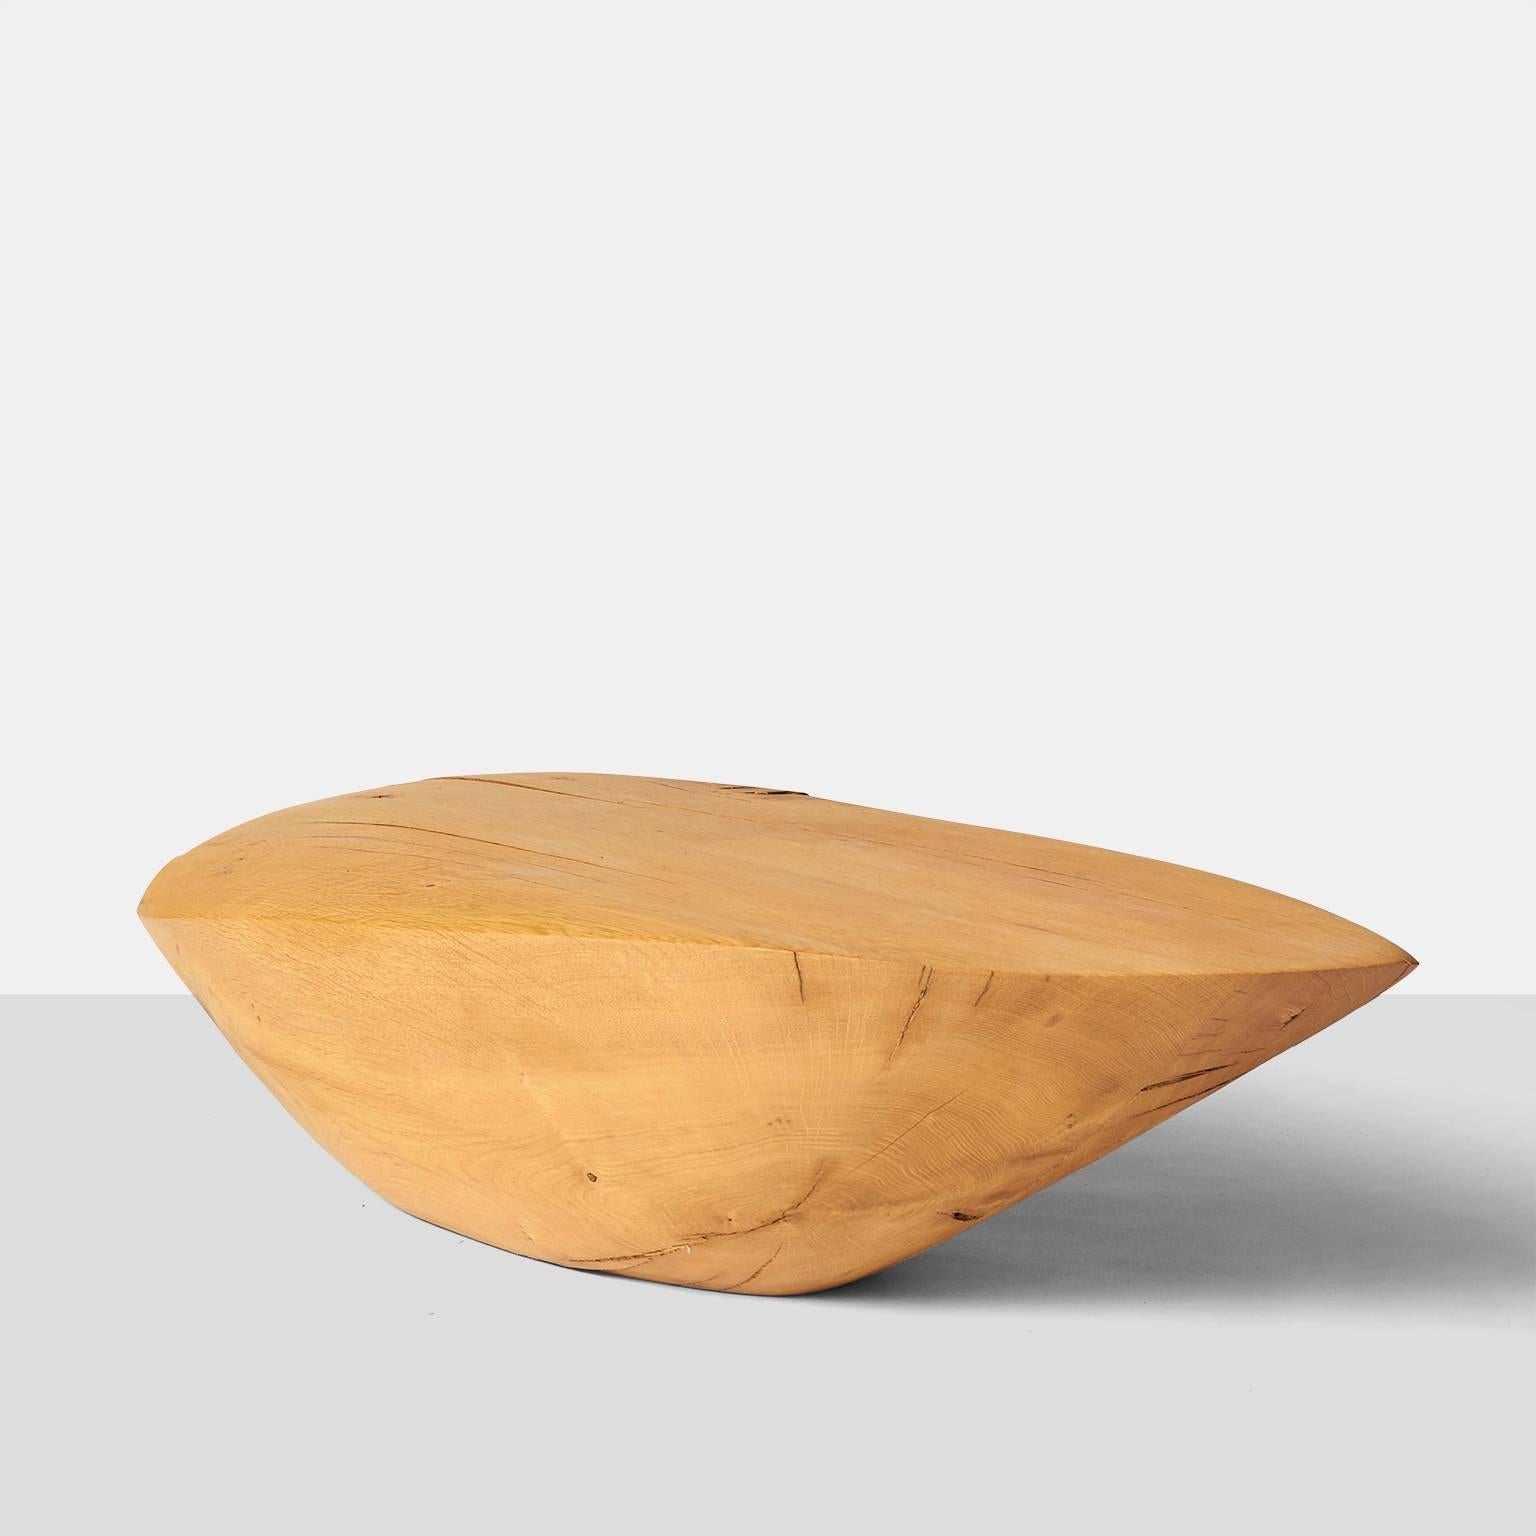 Une table basse de taille moyenne en forme de galet, créée par l'artiste allemand Kaspar Hamacher à partir du tronc d'une pièce massive de chêne tombée naturellement.
Almond + Co. est la galerie exclusive sélectionnée pour représenter toutes les